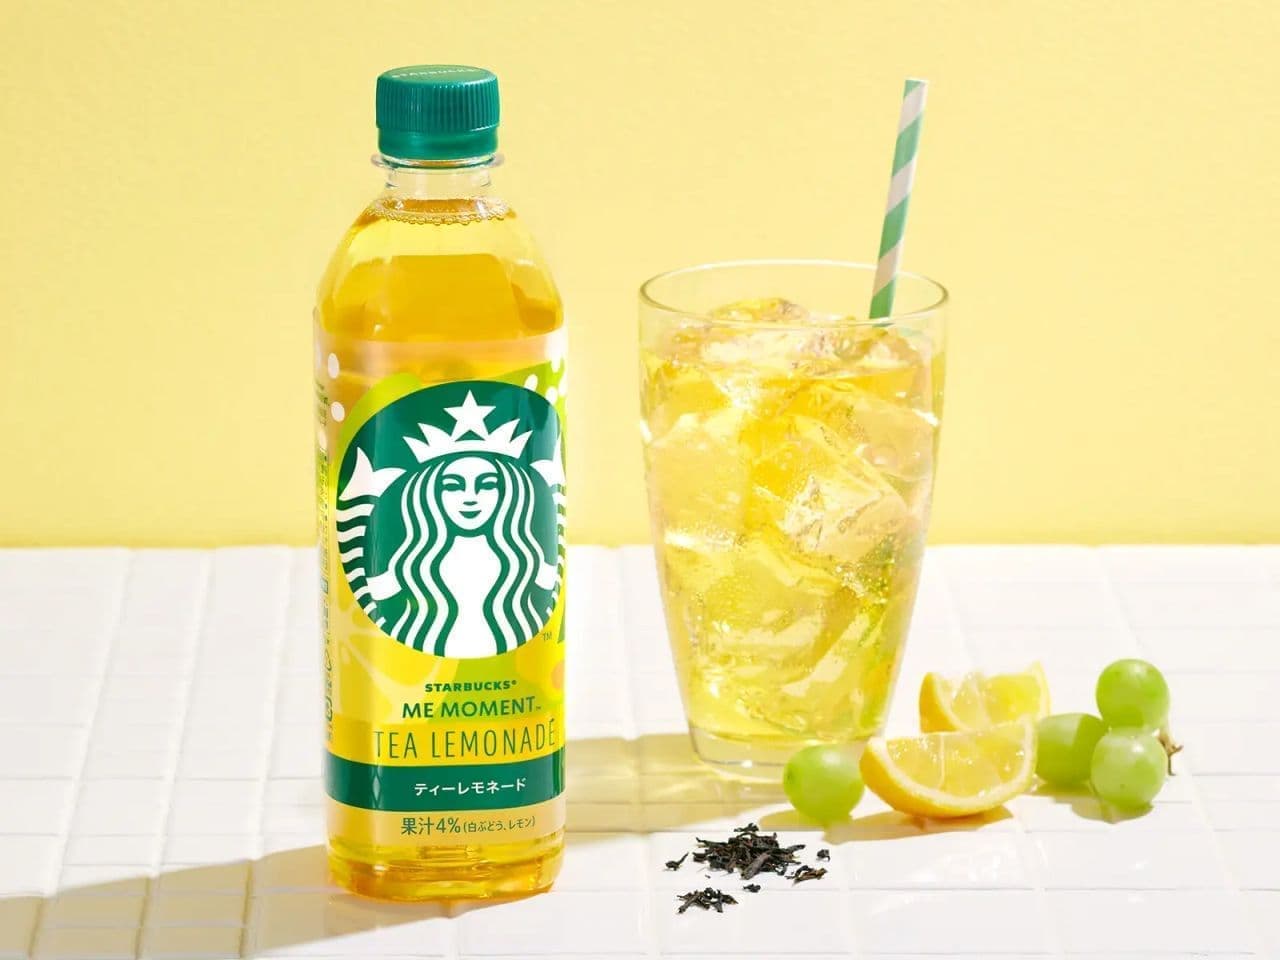 Starbucks ME MOMENT Tea Lemonade